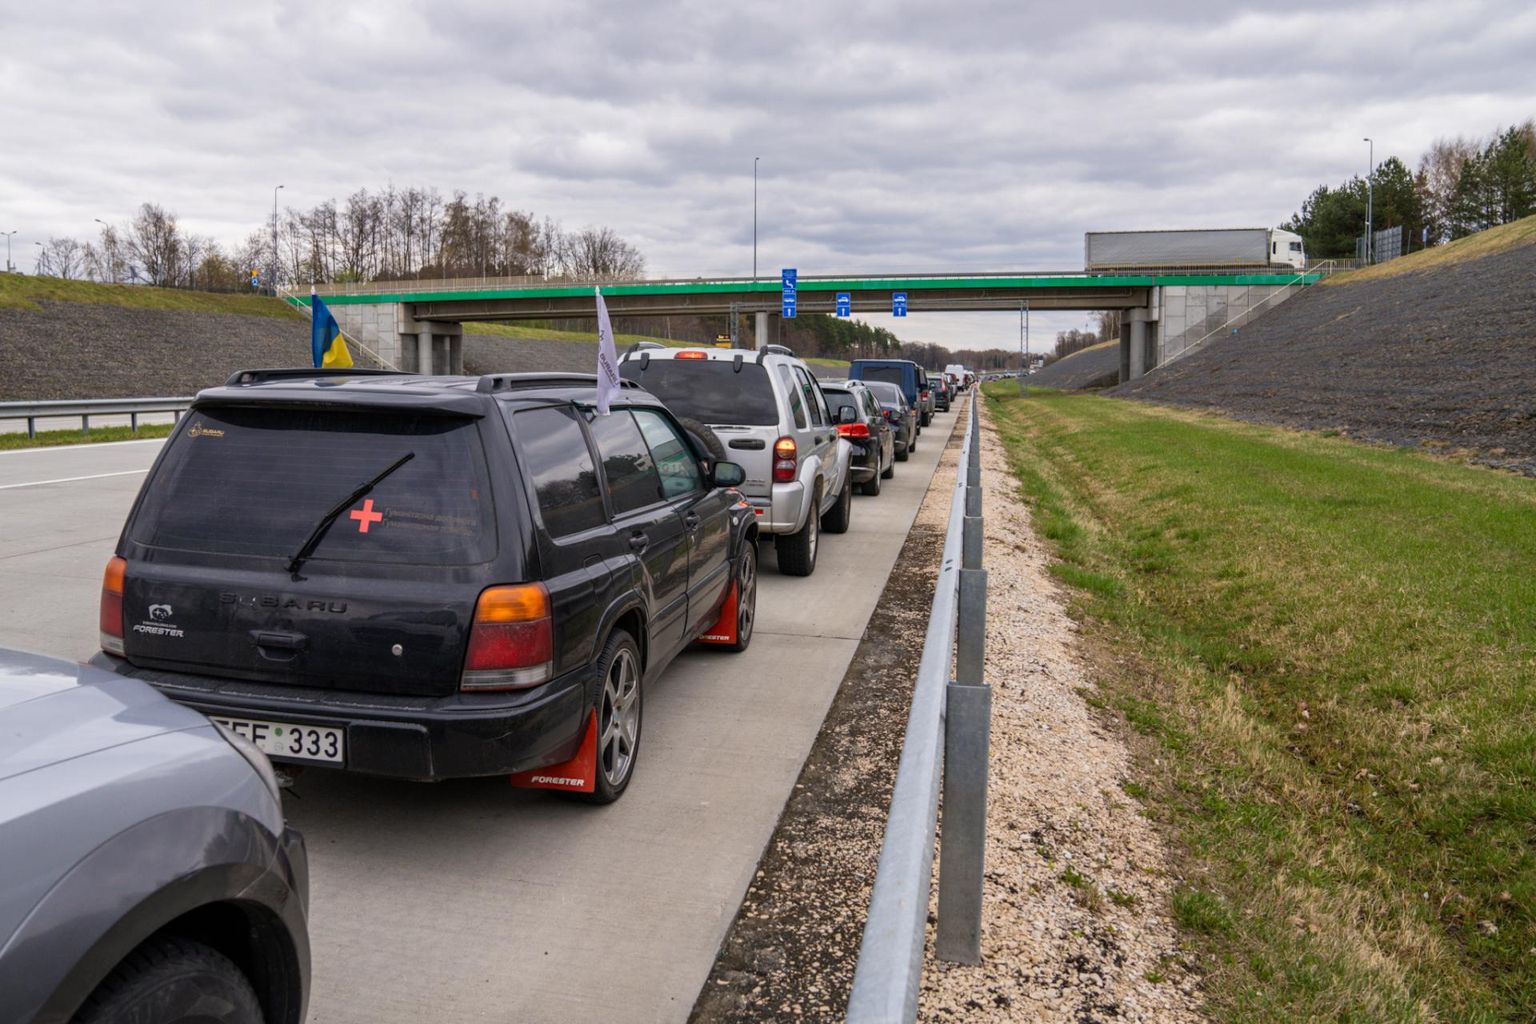 Korczowa grenseovergang i Polen til Ukraina.